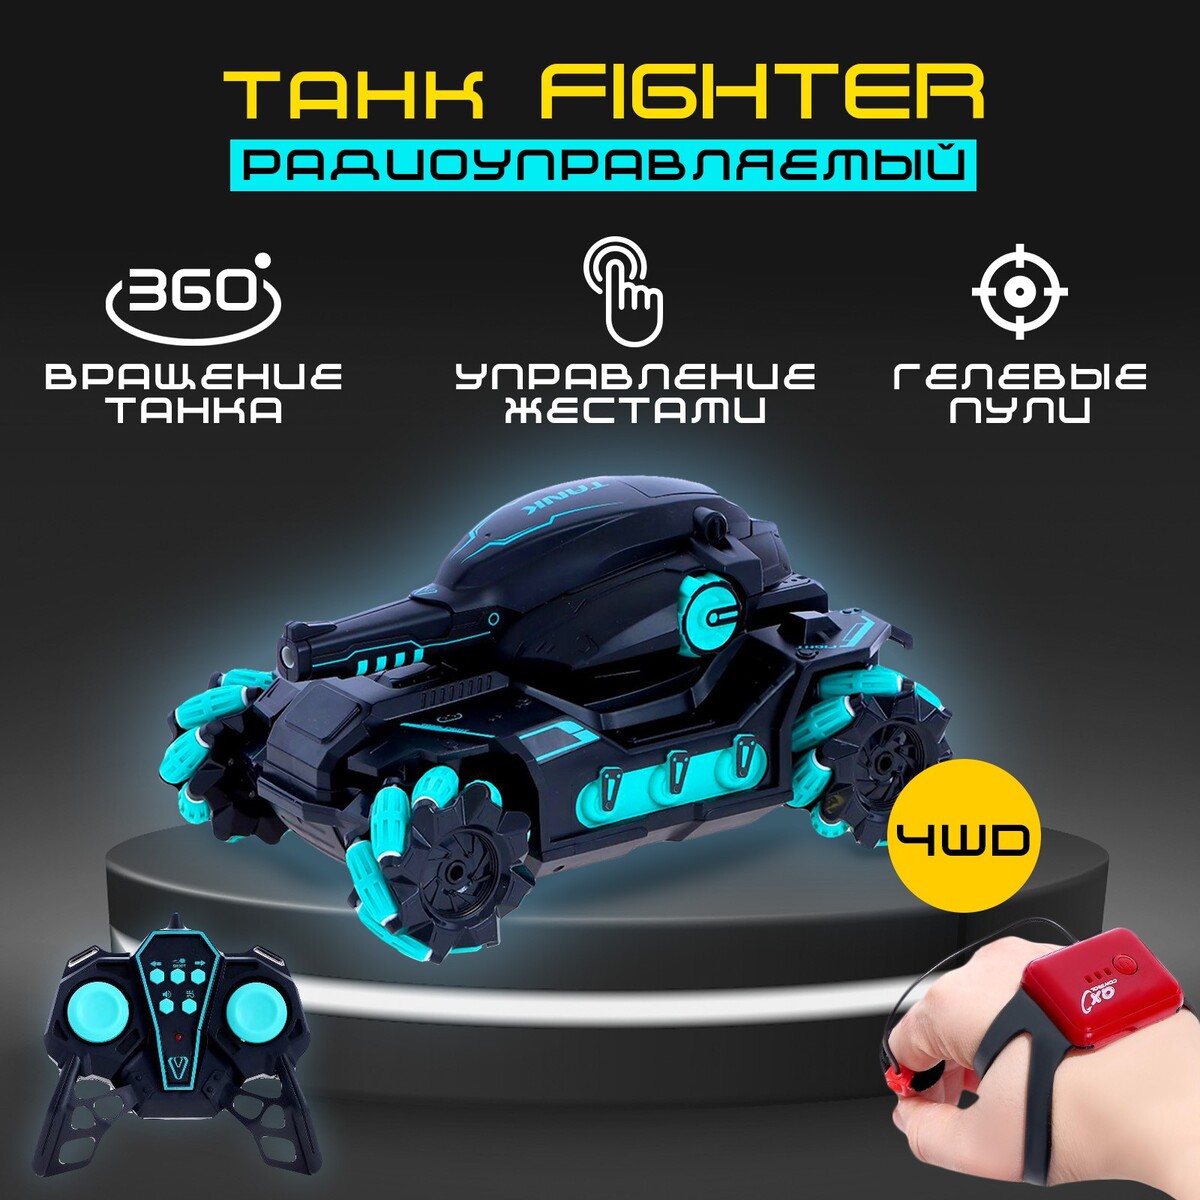 Танк радиоуправляемый fighter, 4wd, управление жестами, стреляет гелевыми пулями, цвет черно-синий